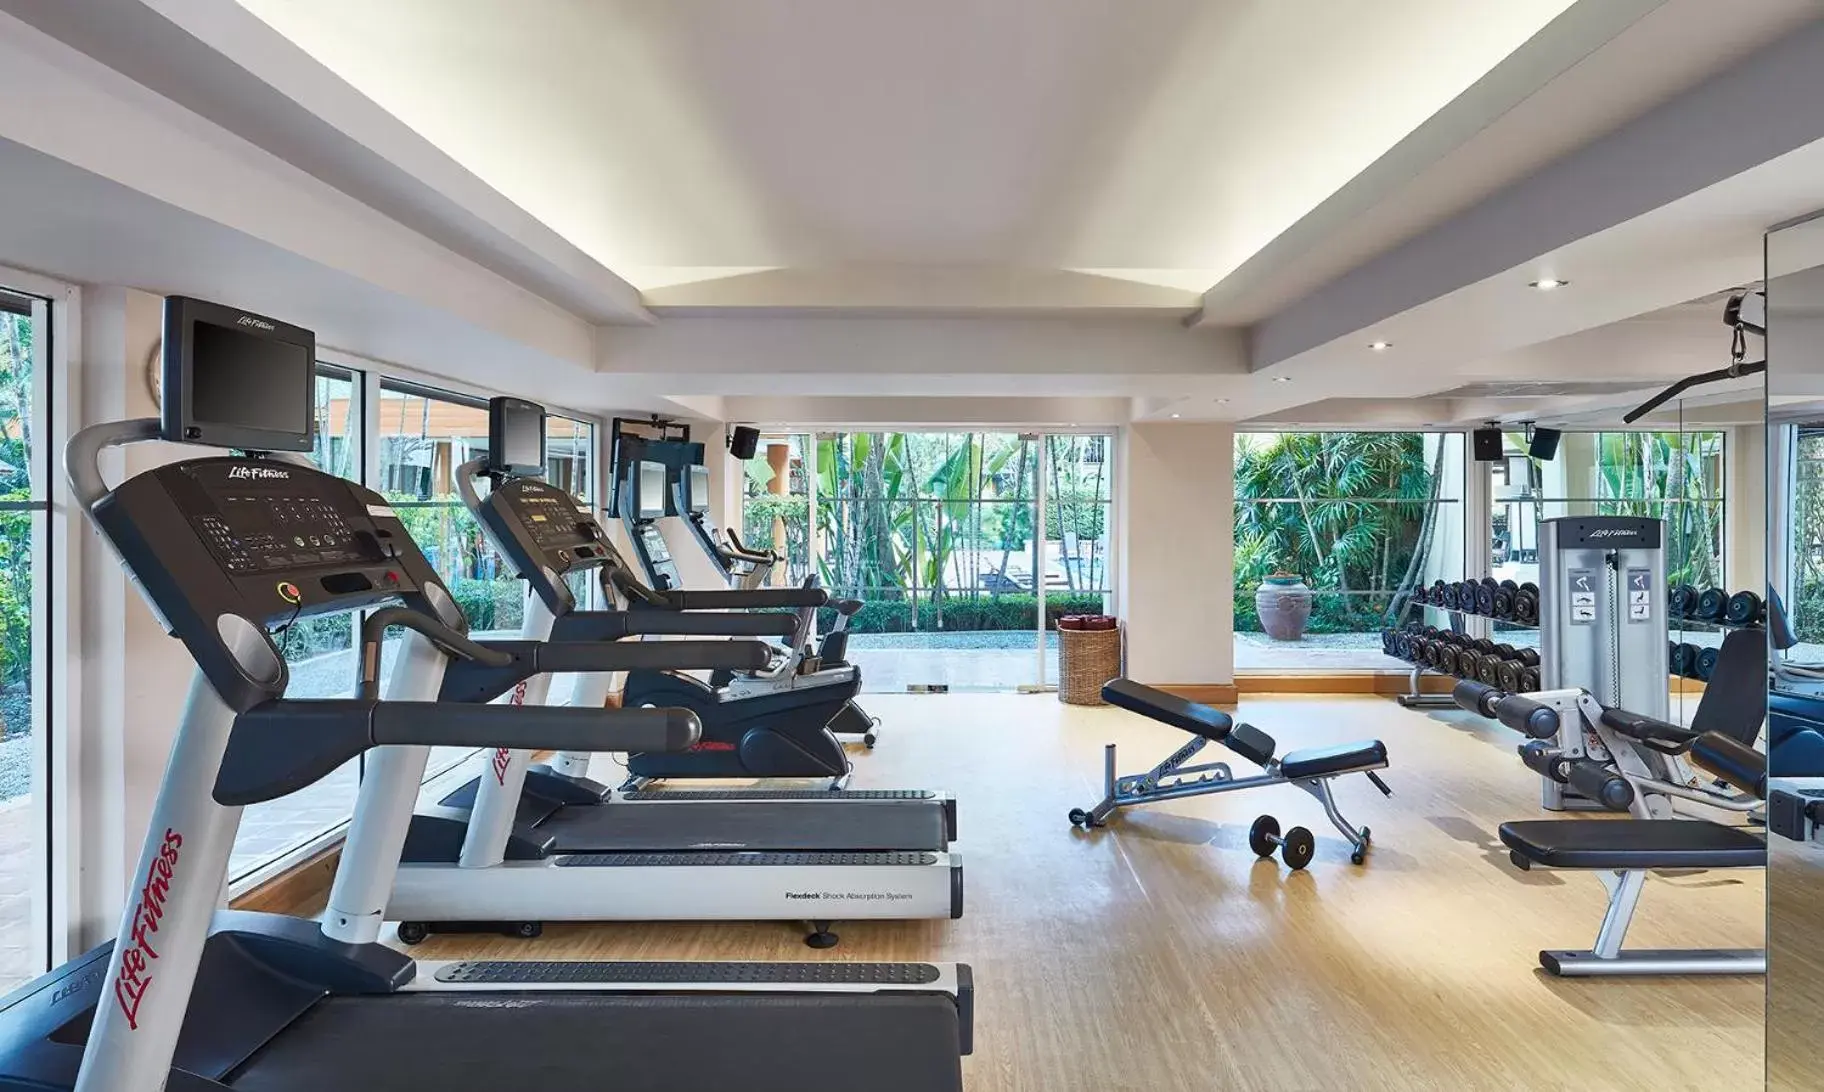 Fitness centre/facilities, Fitness Center/Facilities in Hyatt Regency Hua Hin SHA Extra Plus